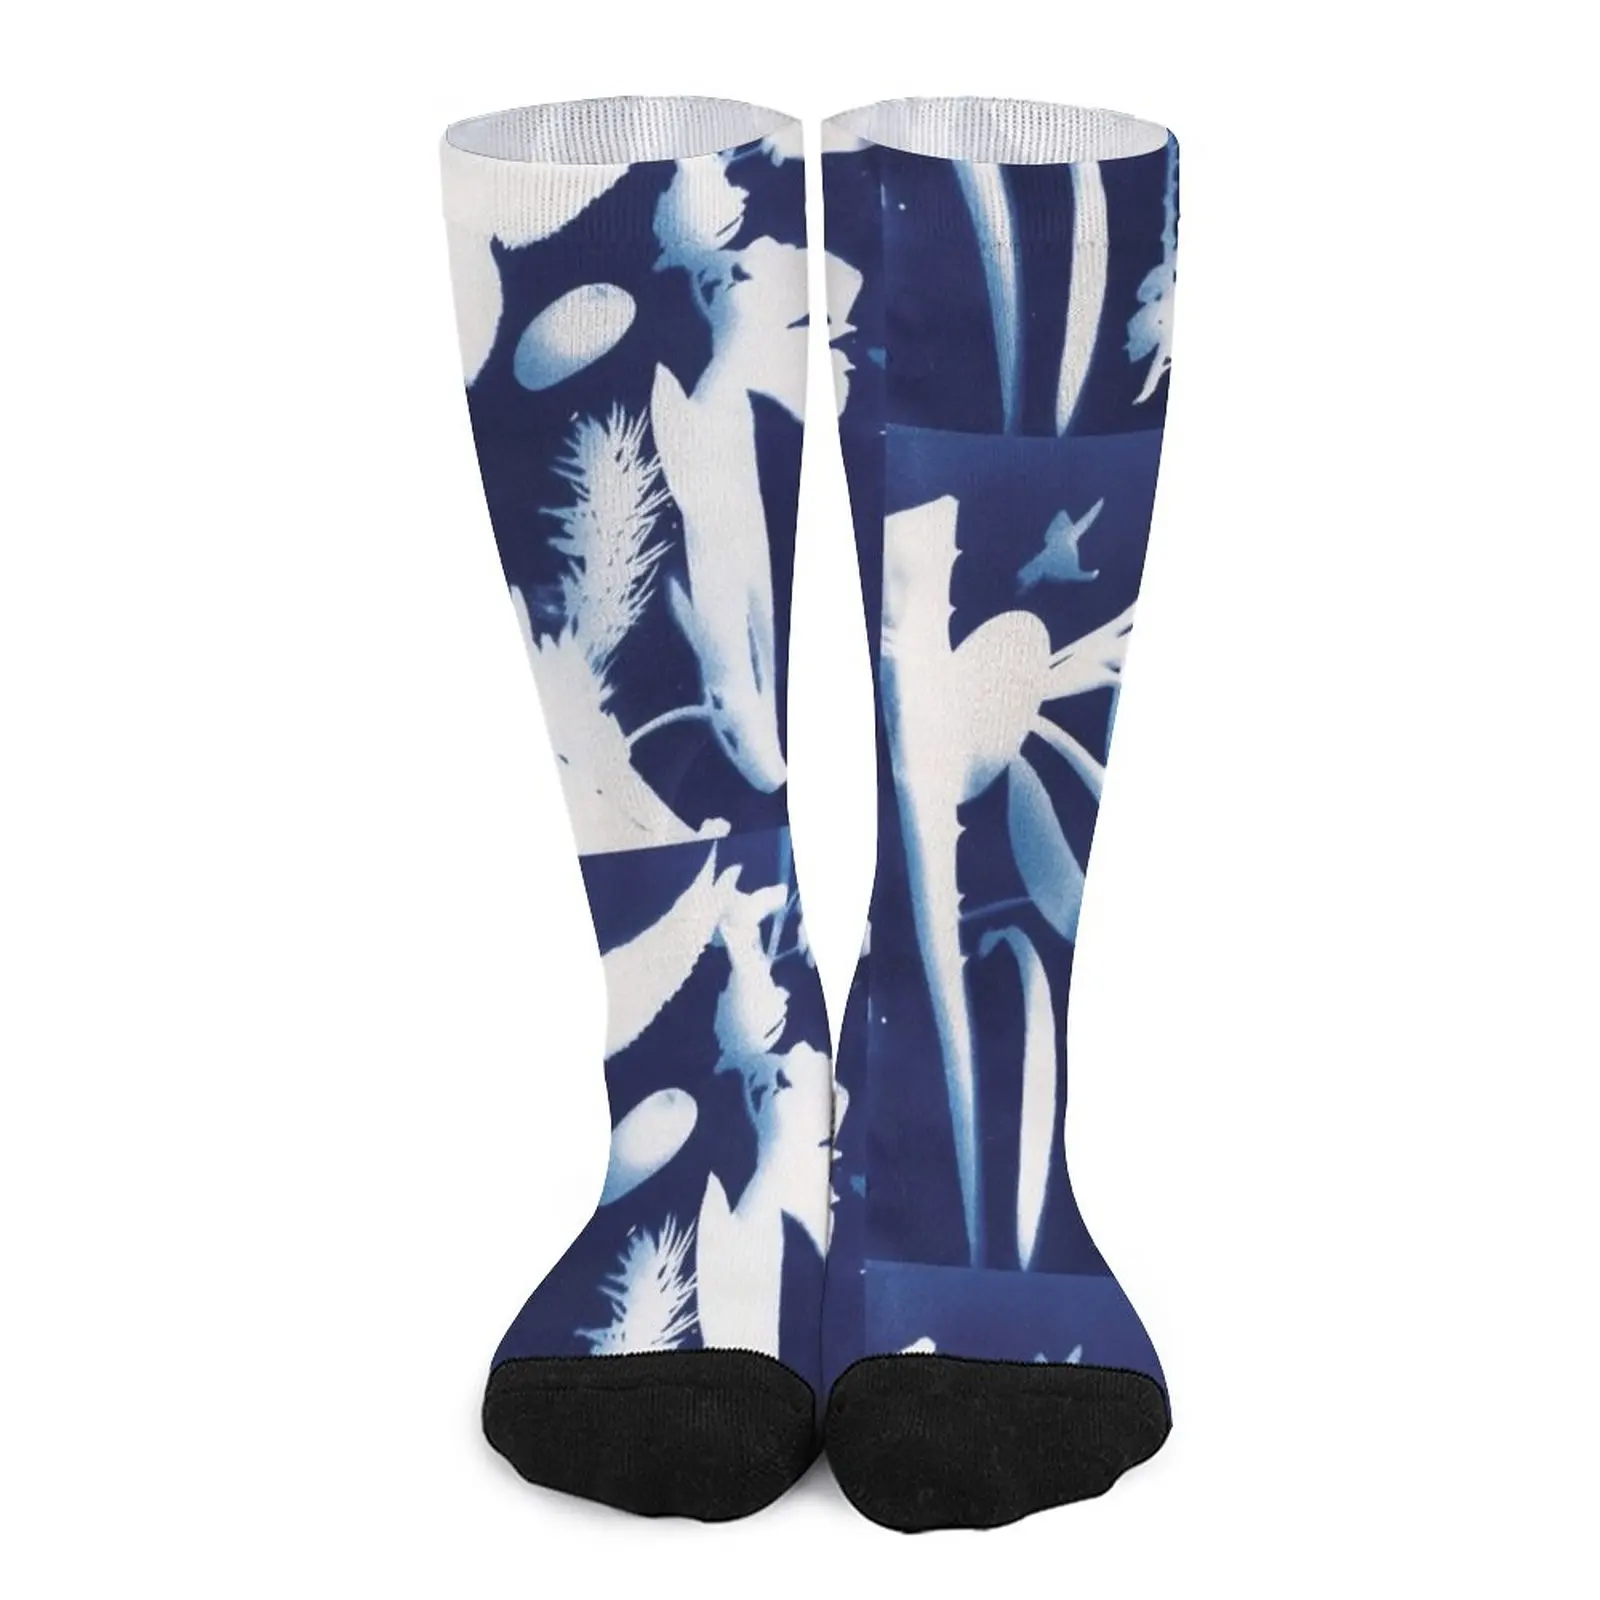 Echidnas INSPIRE Artwork #5 Socks gift for men cycling socks long socks man